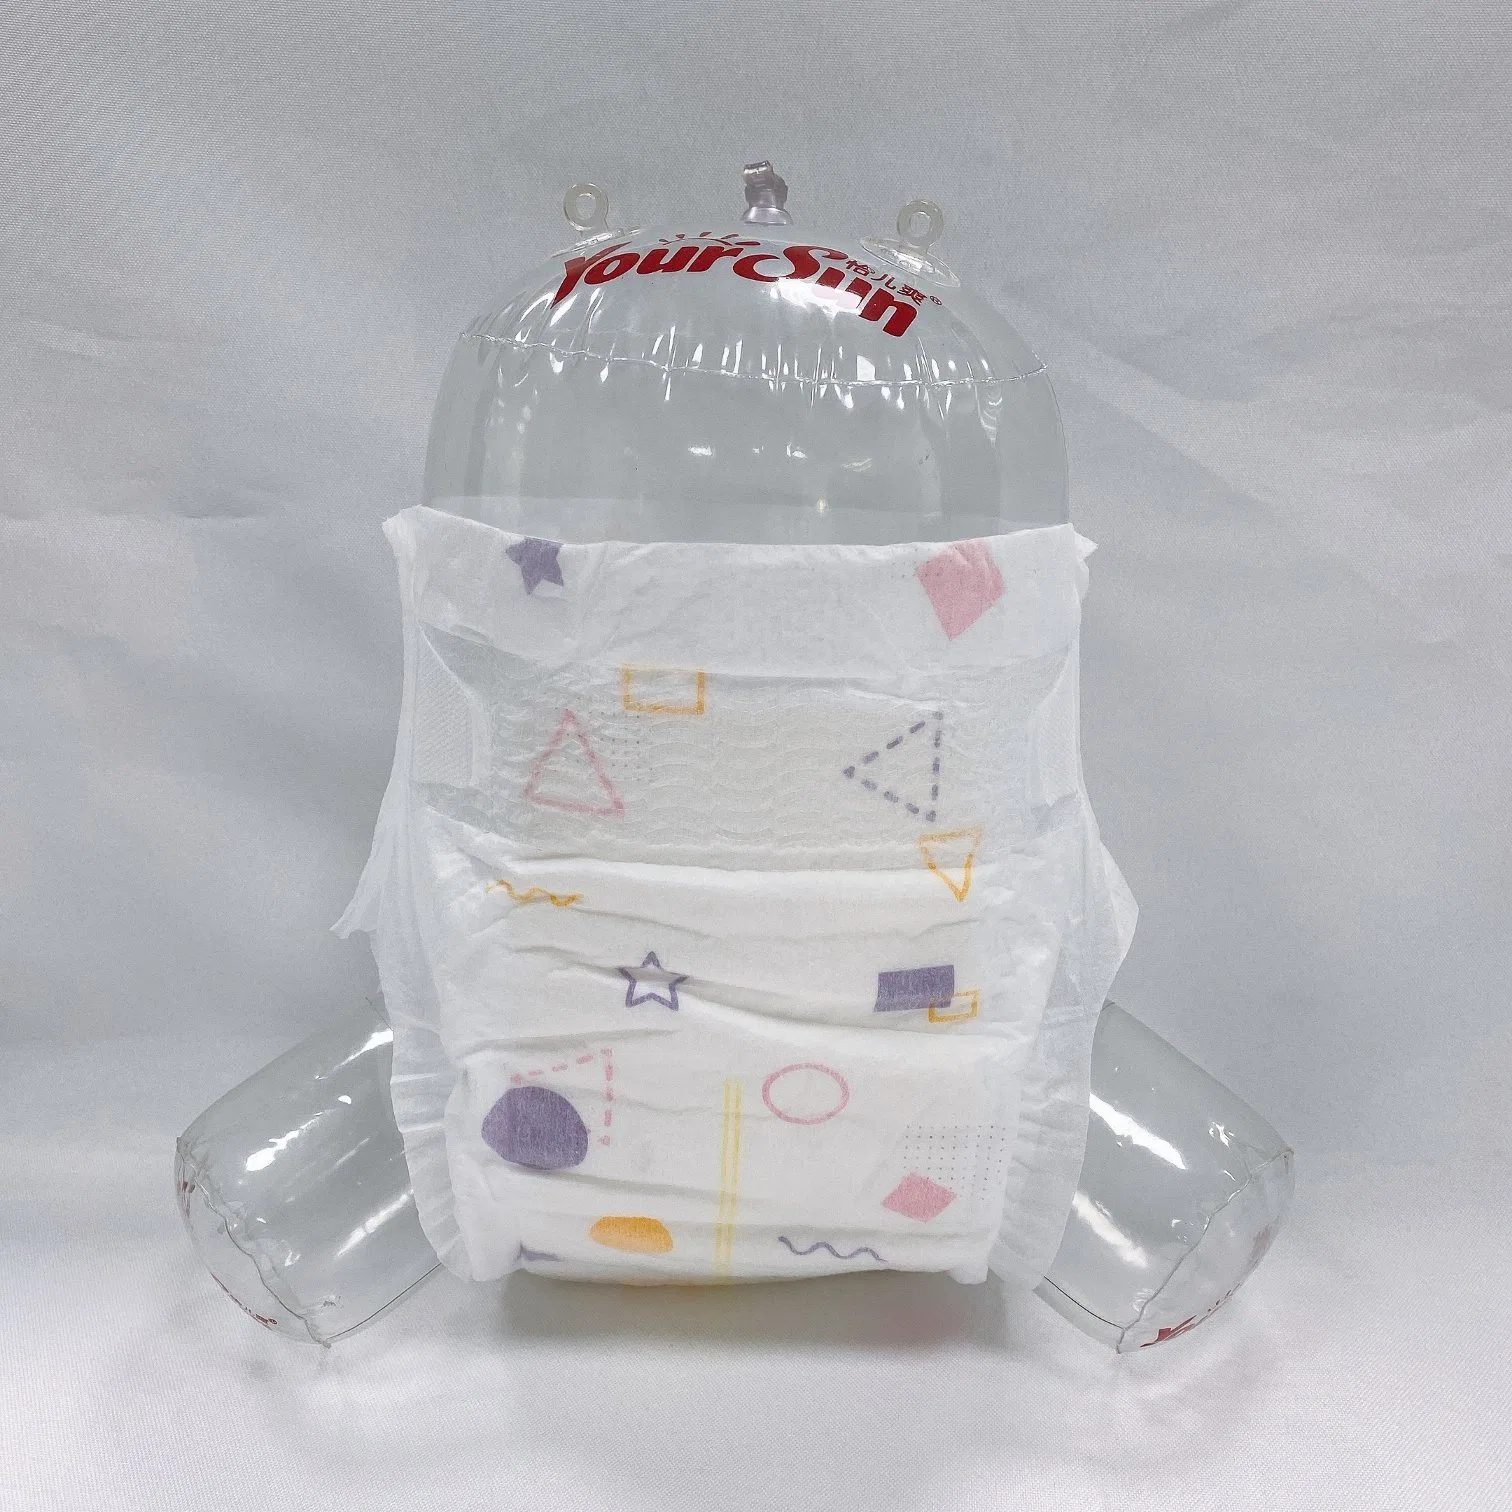 El DHC Super suave superficie 3D Ultra delgado Japan Quality productos desechables de bebé jale pantalones